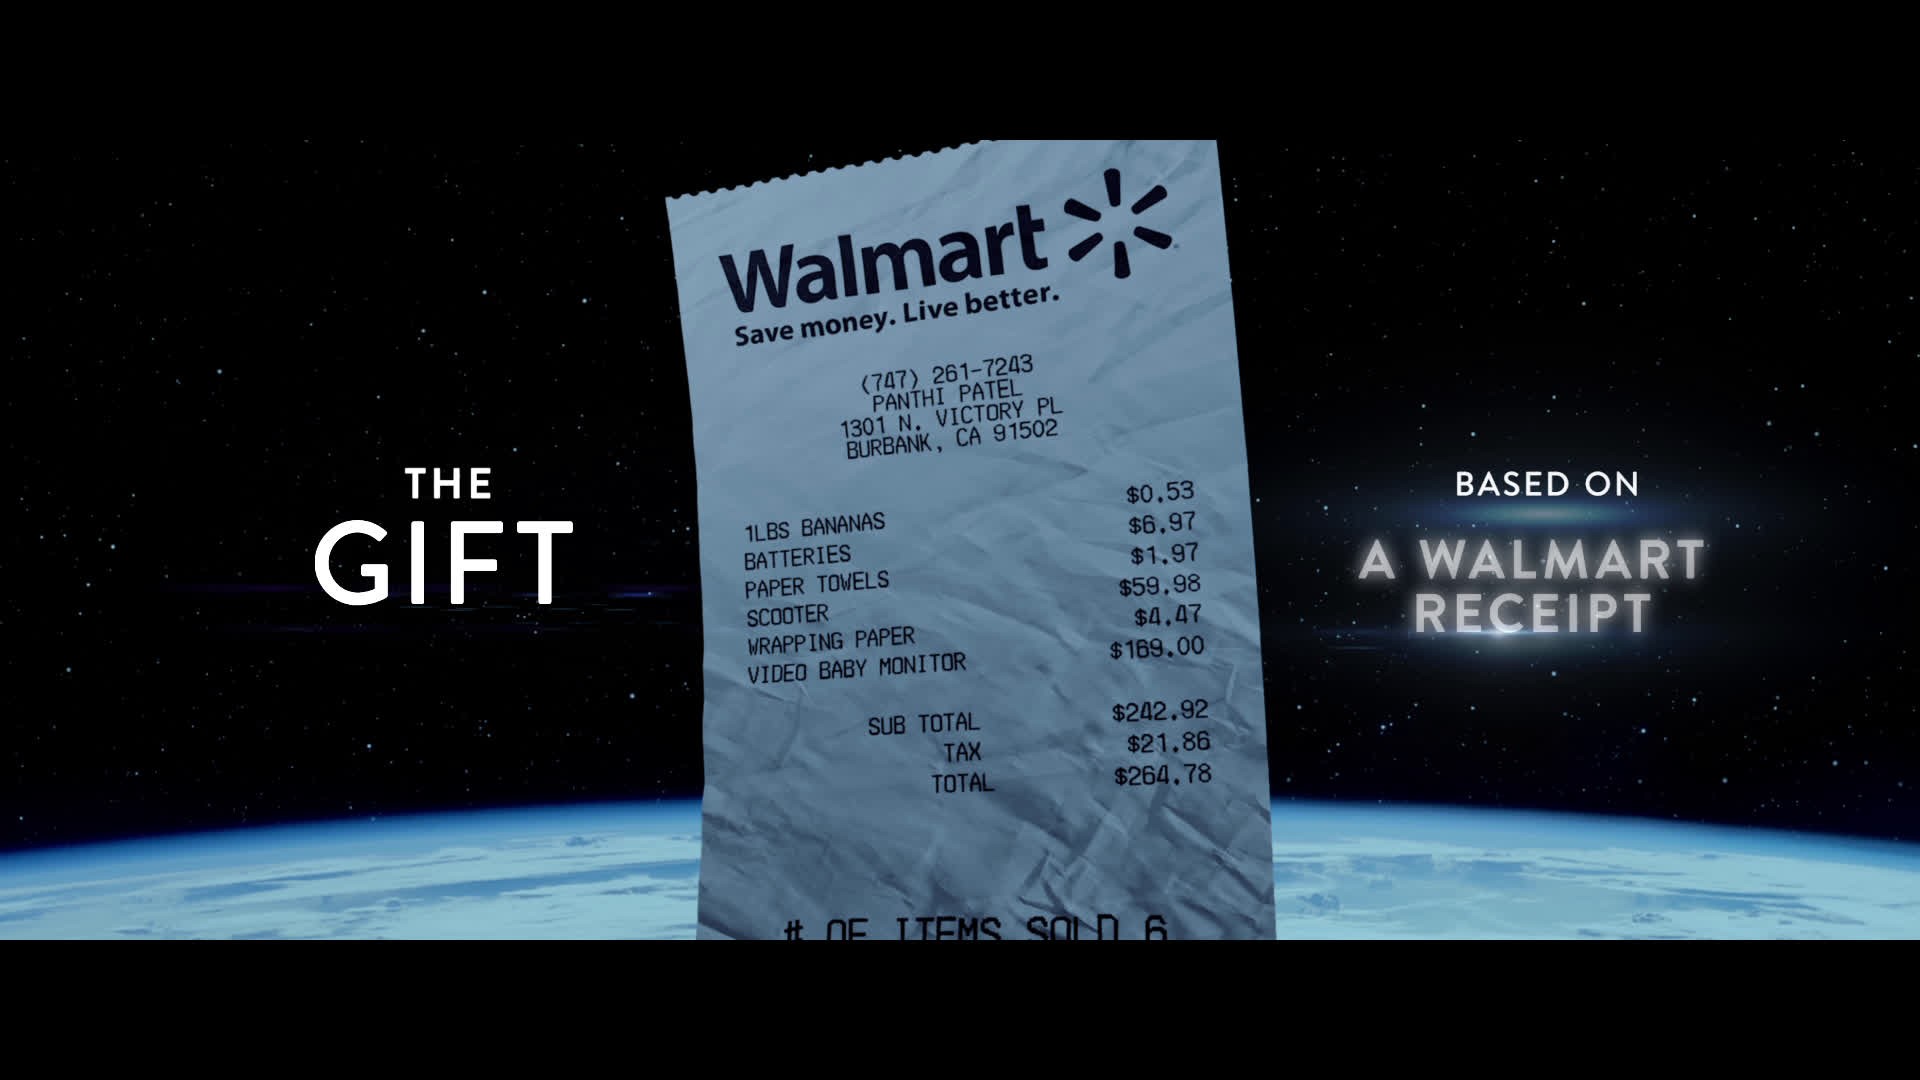 Walmart: The Gift